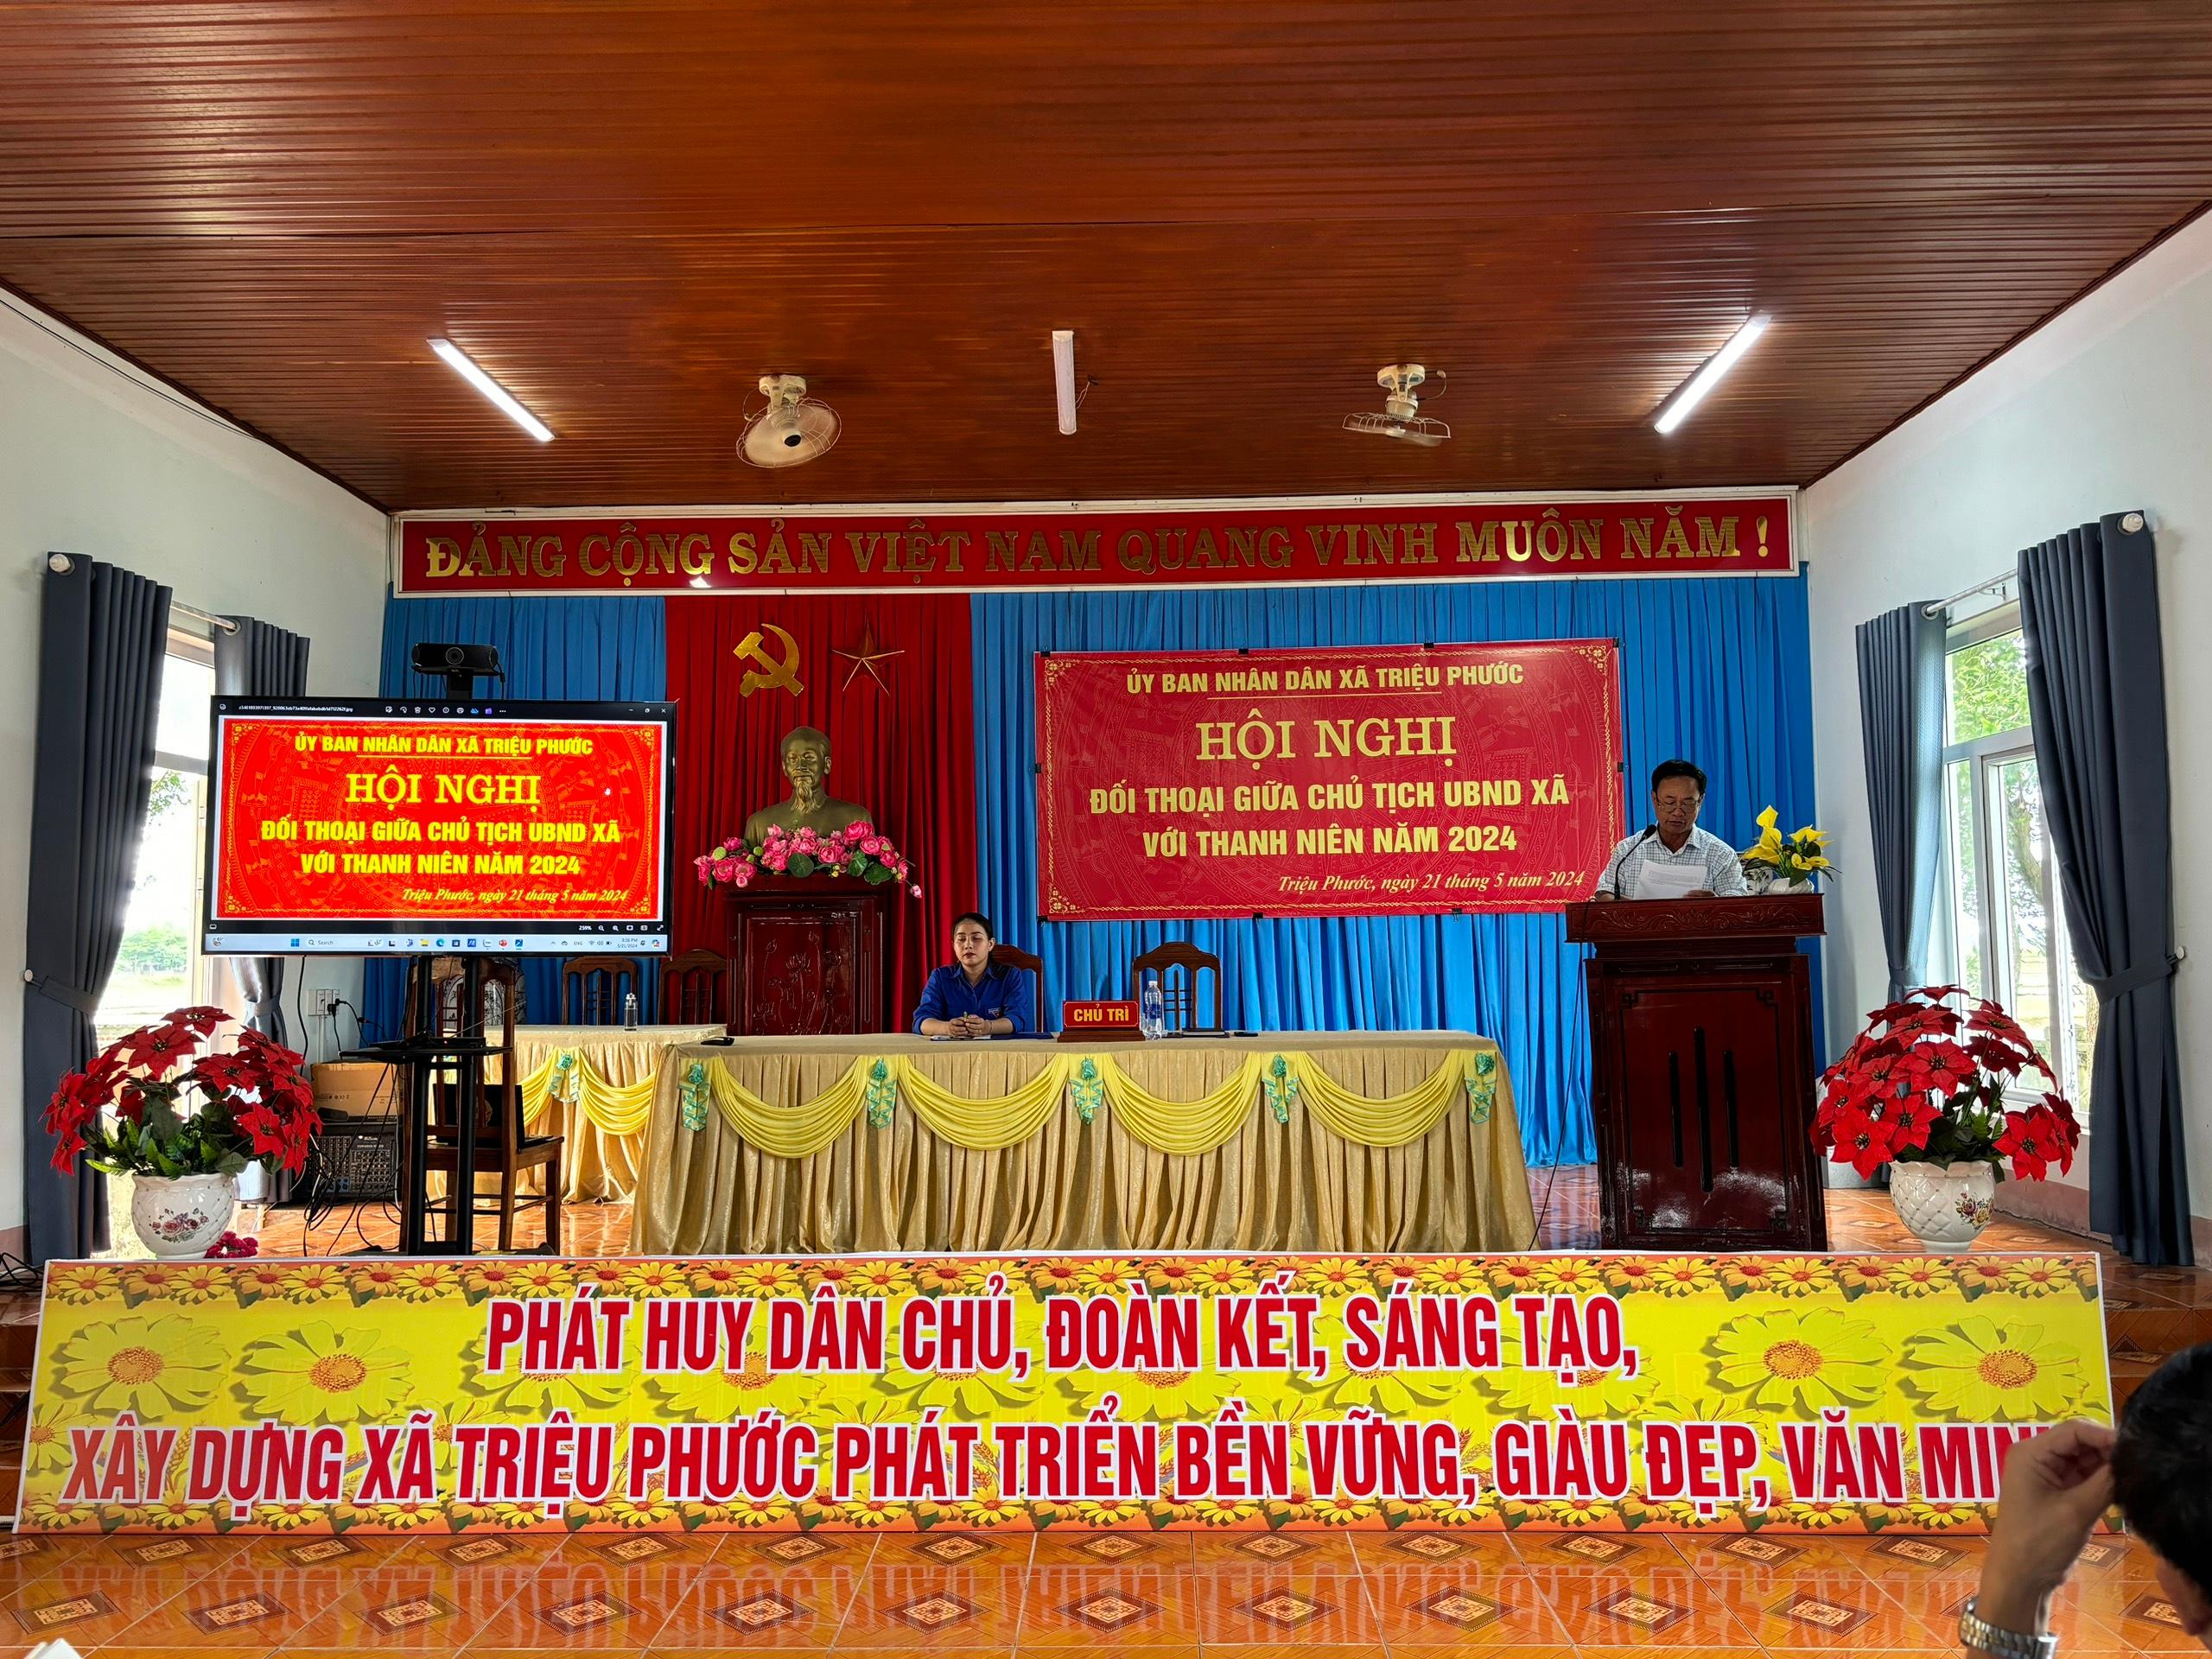 UBND xã Triệu Phước tổ chức Hội nghị đối thoại giữa Chủ tịch UBND xã với thanh niên năm 2024